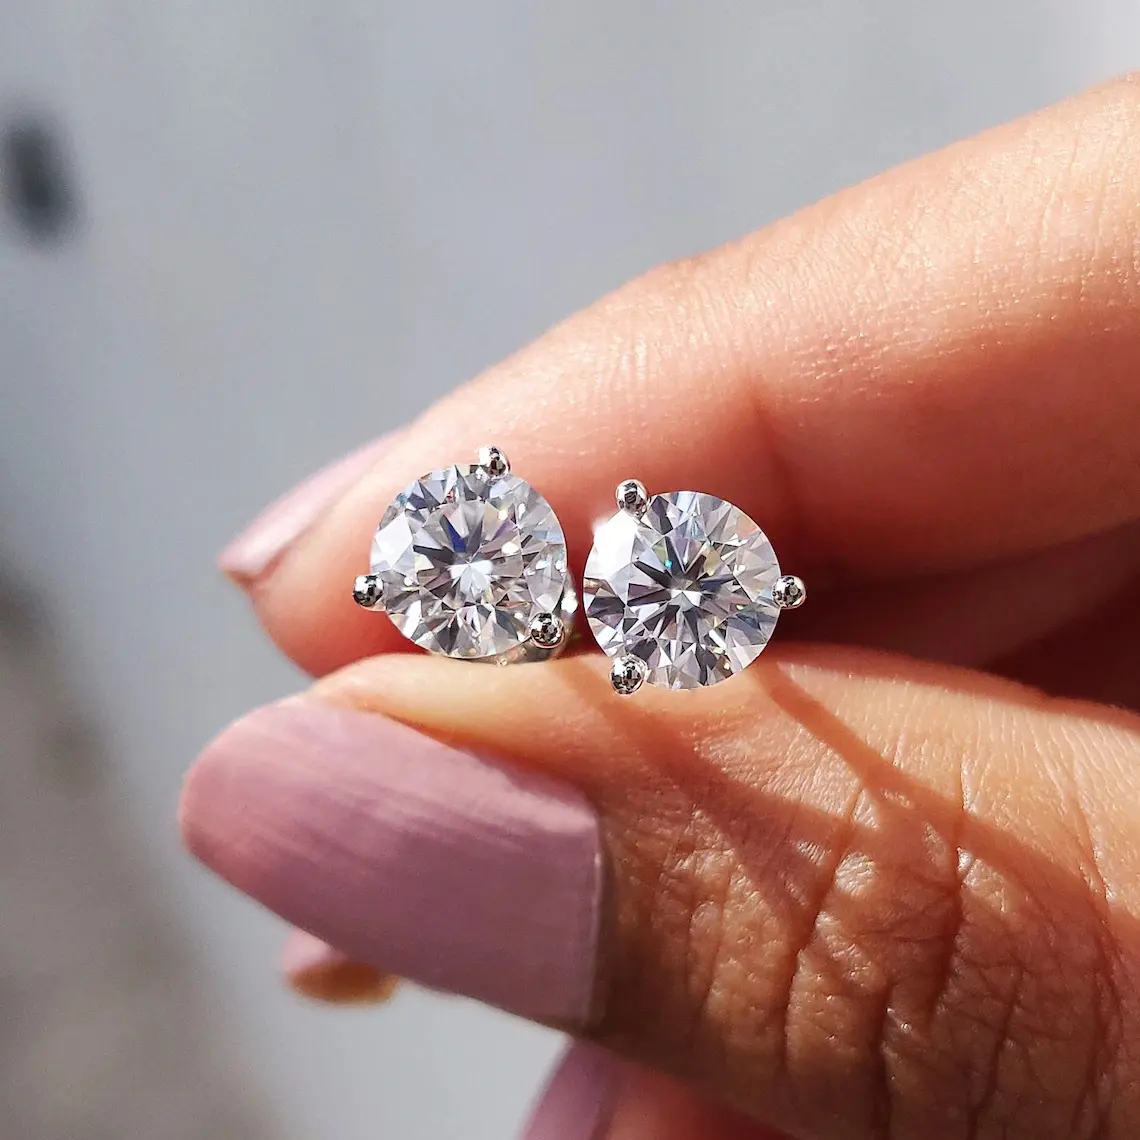 piercing jewelry 3 prongs set lab grown diamond stud earrings in white 14K women earrings 1ctw real diamond ear studs